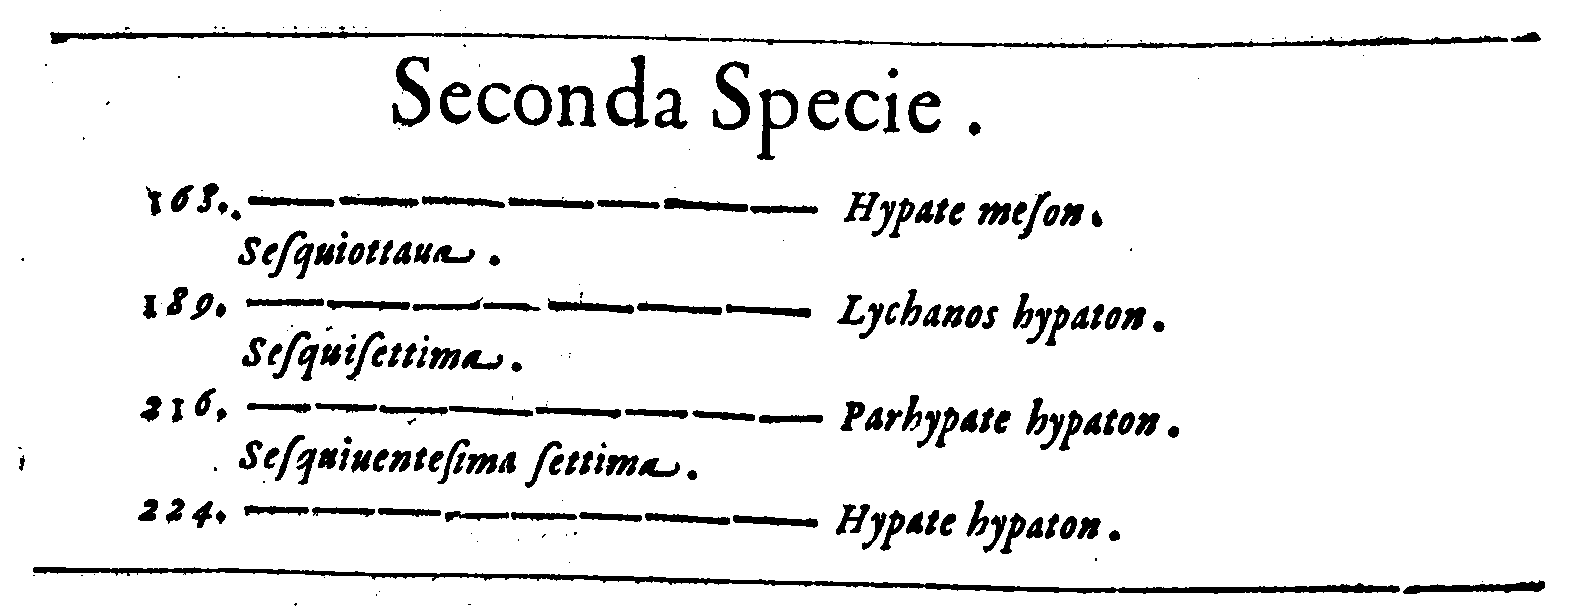 Seconda Specie.
168. ——— Hypate meson.
Sesquiottaua.
189. ——— Lychanos hypaton.
Sesquisettima.
216. ——— Parhypate hypaton.
Sesquiuentesima settima.
224. ——— Hypate hypaton.